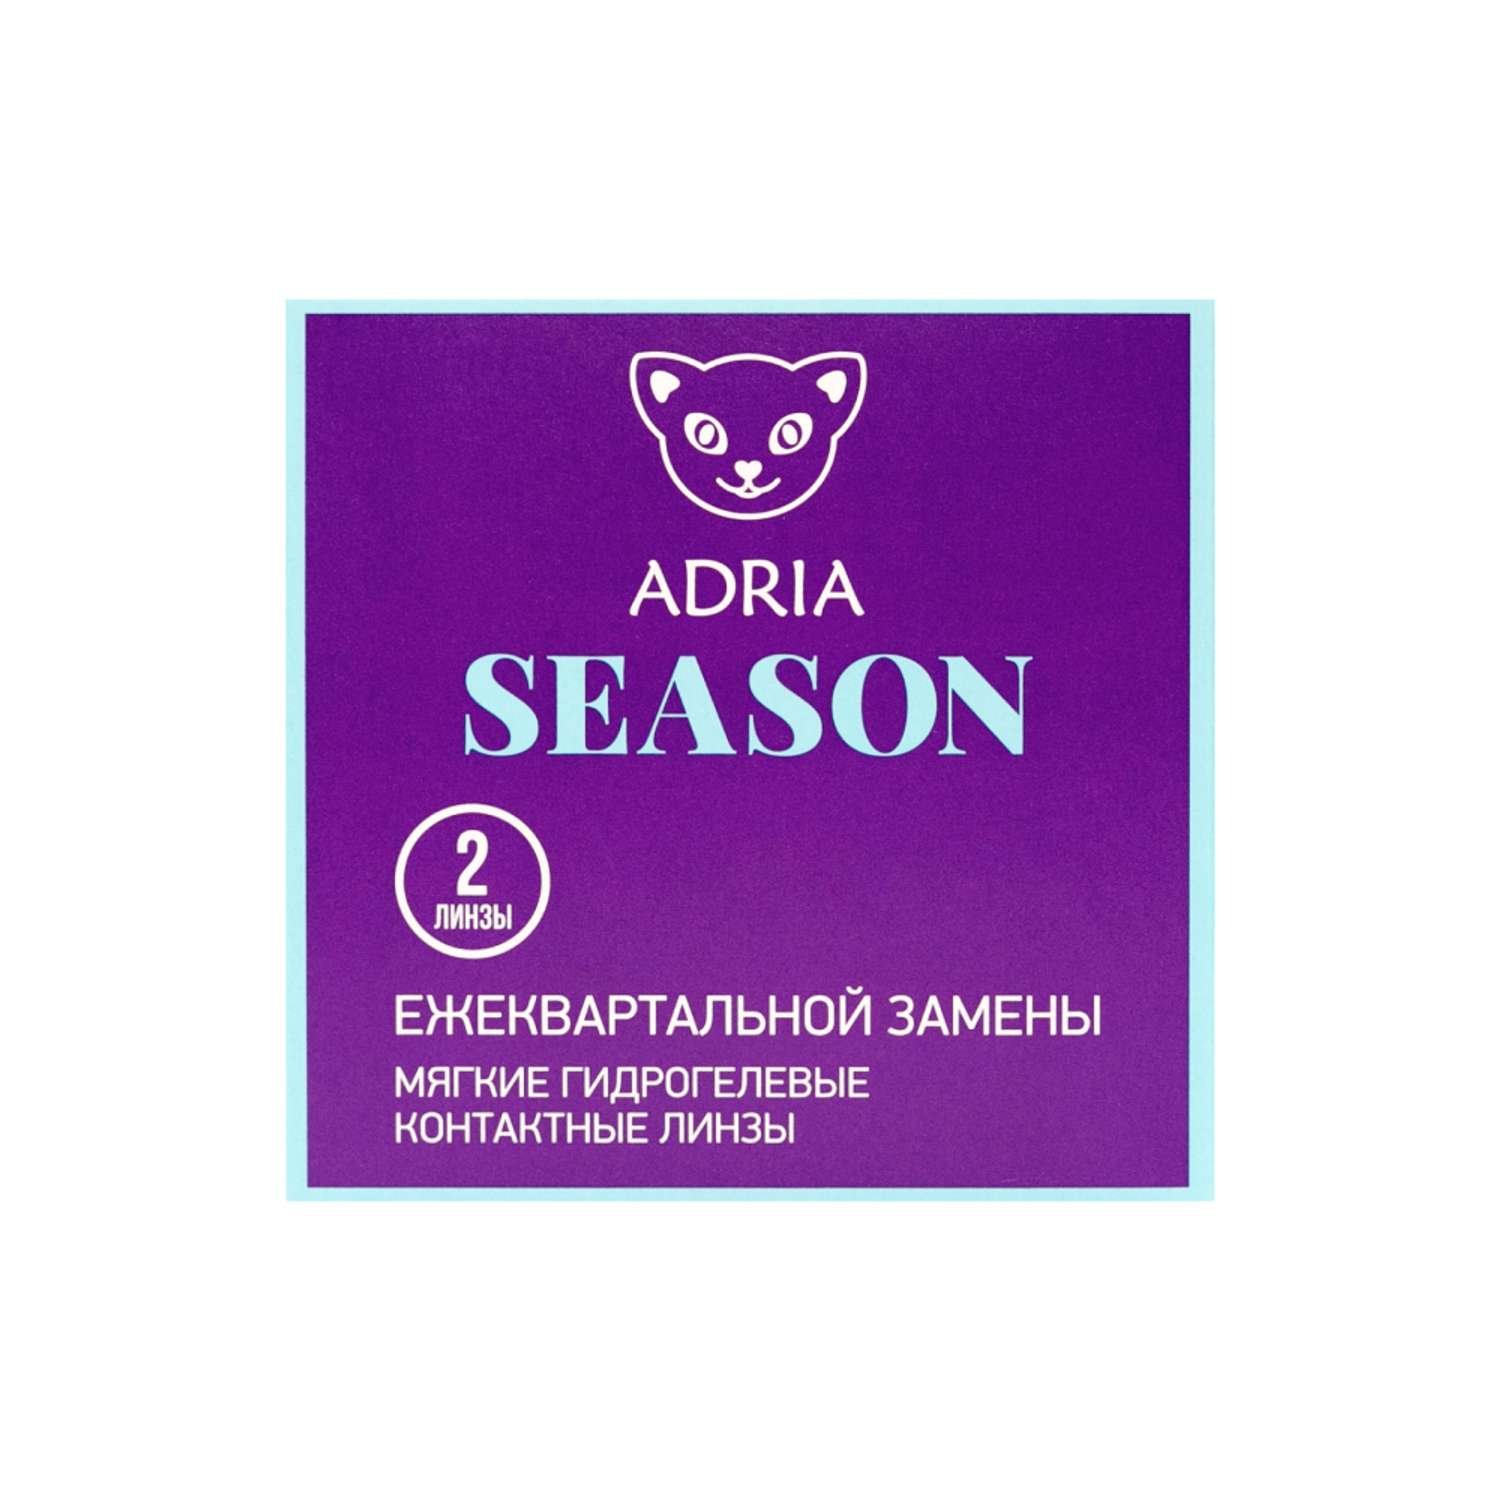 Контактные линзы ADRIA Season 2 линзы R 8.6 -3.75 - фото 6